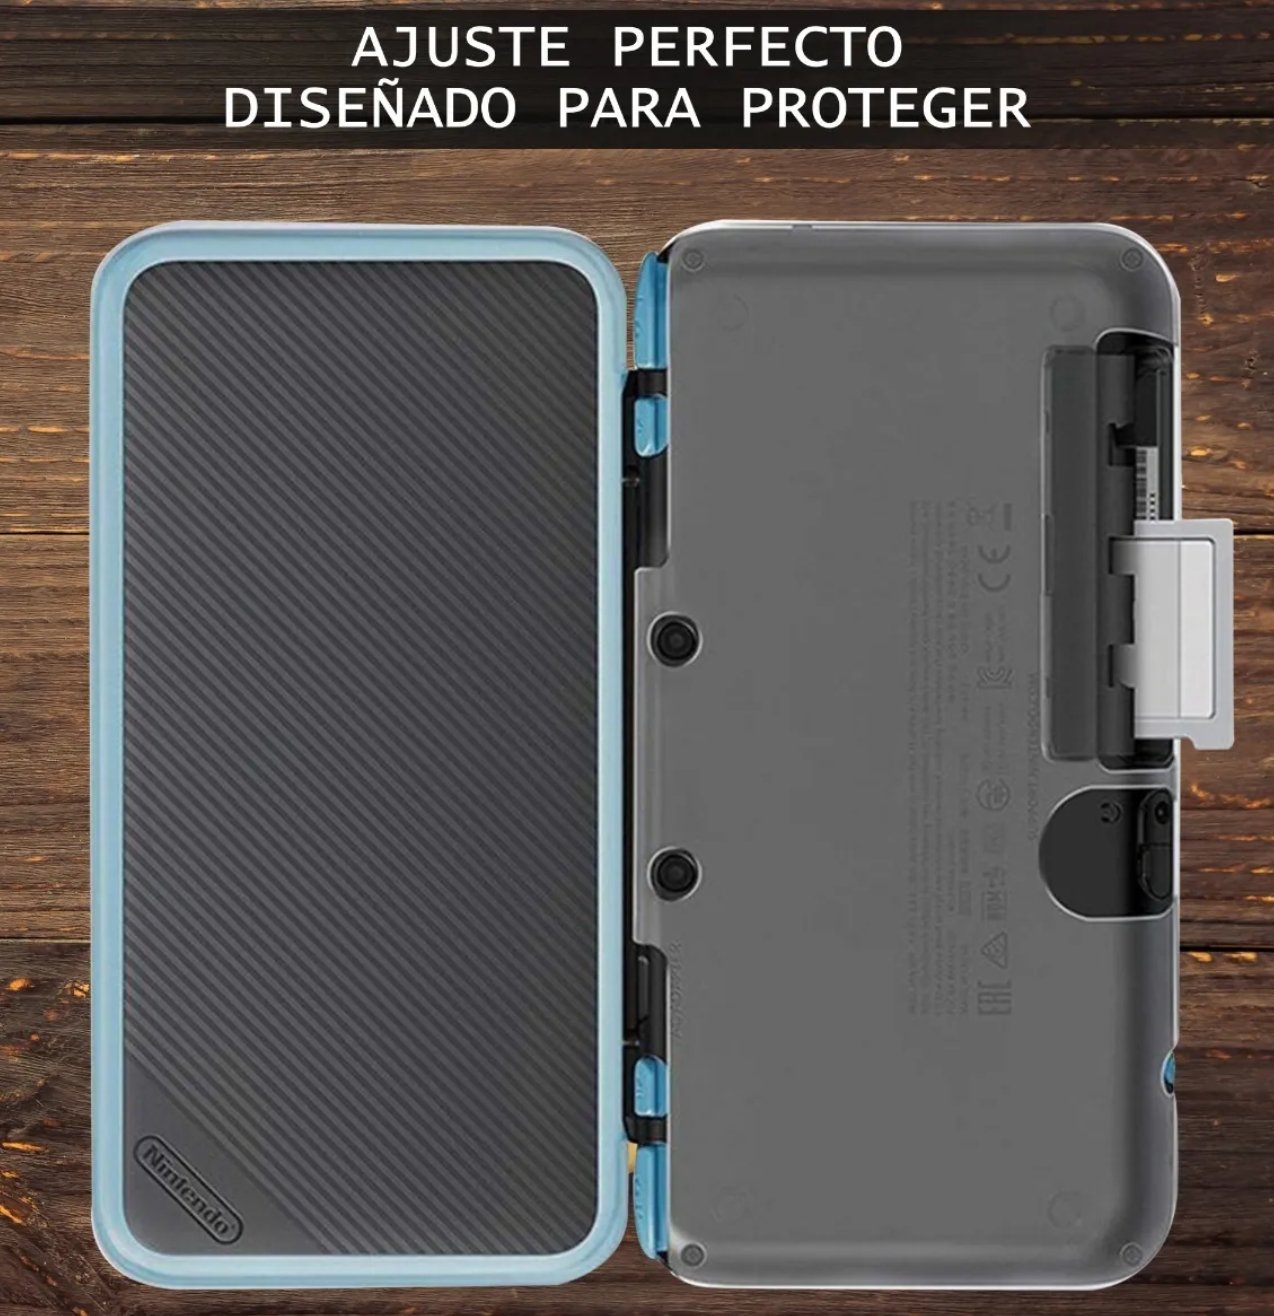 New Nintendo 2ds Xl Case Kit De Protección - TiendaGeek.com